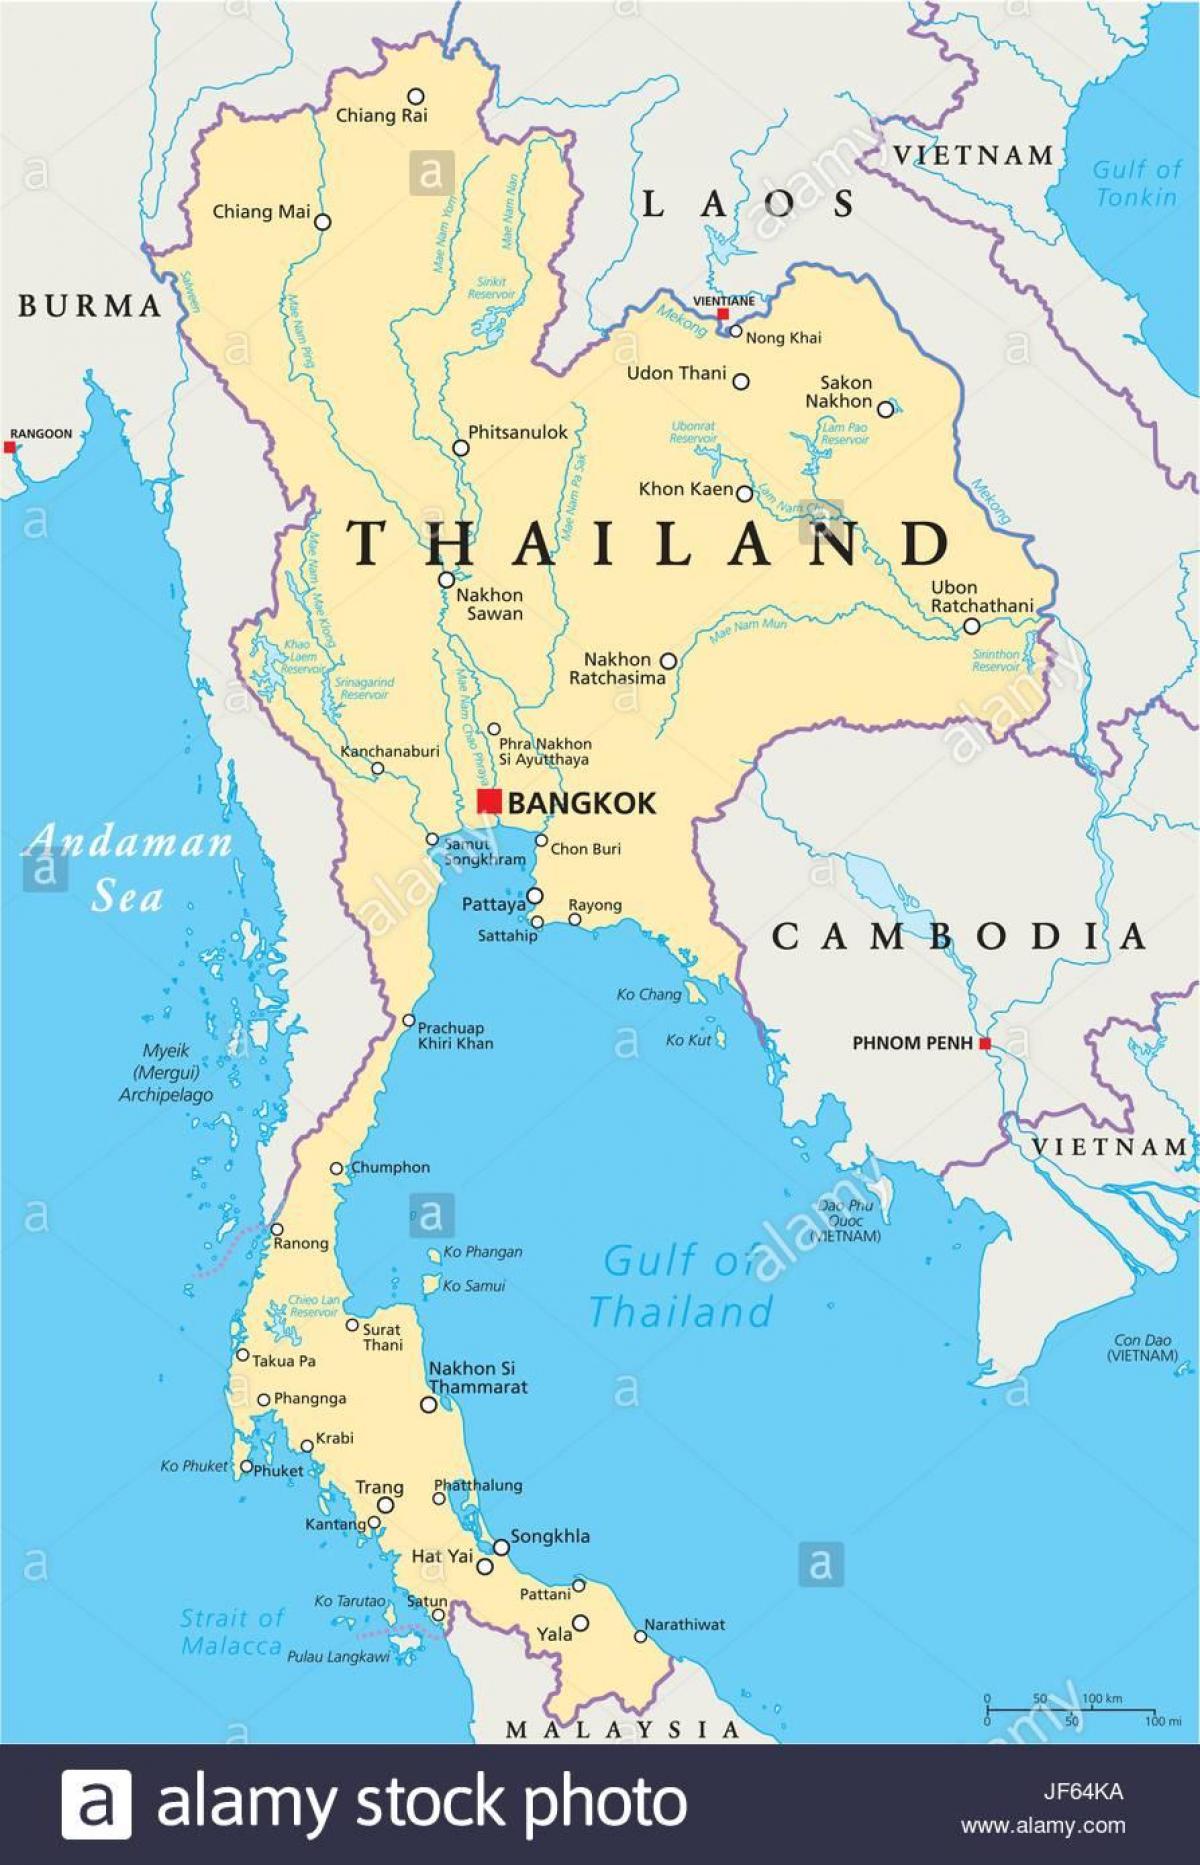 bangkok në një hartë të botës